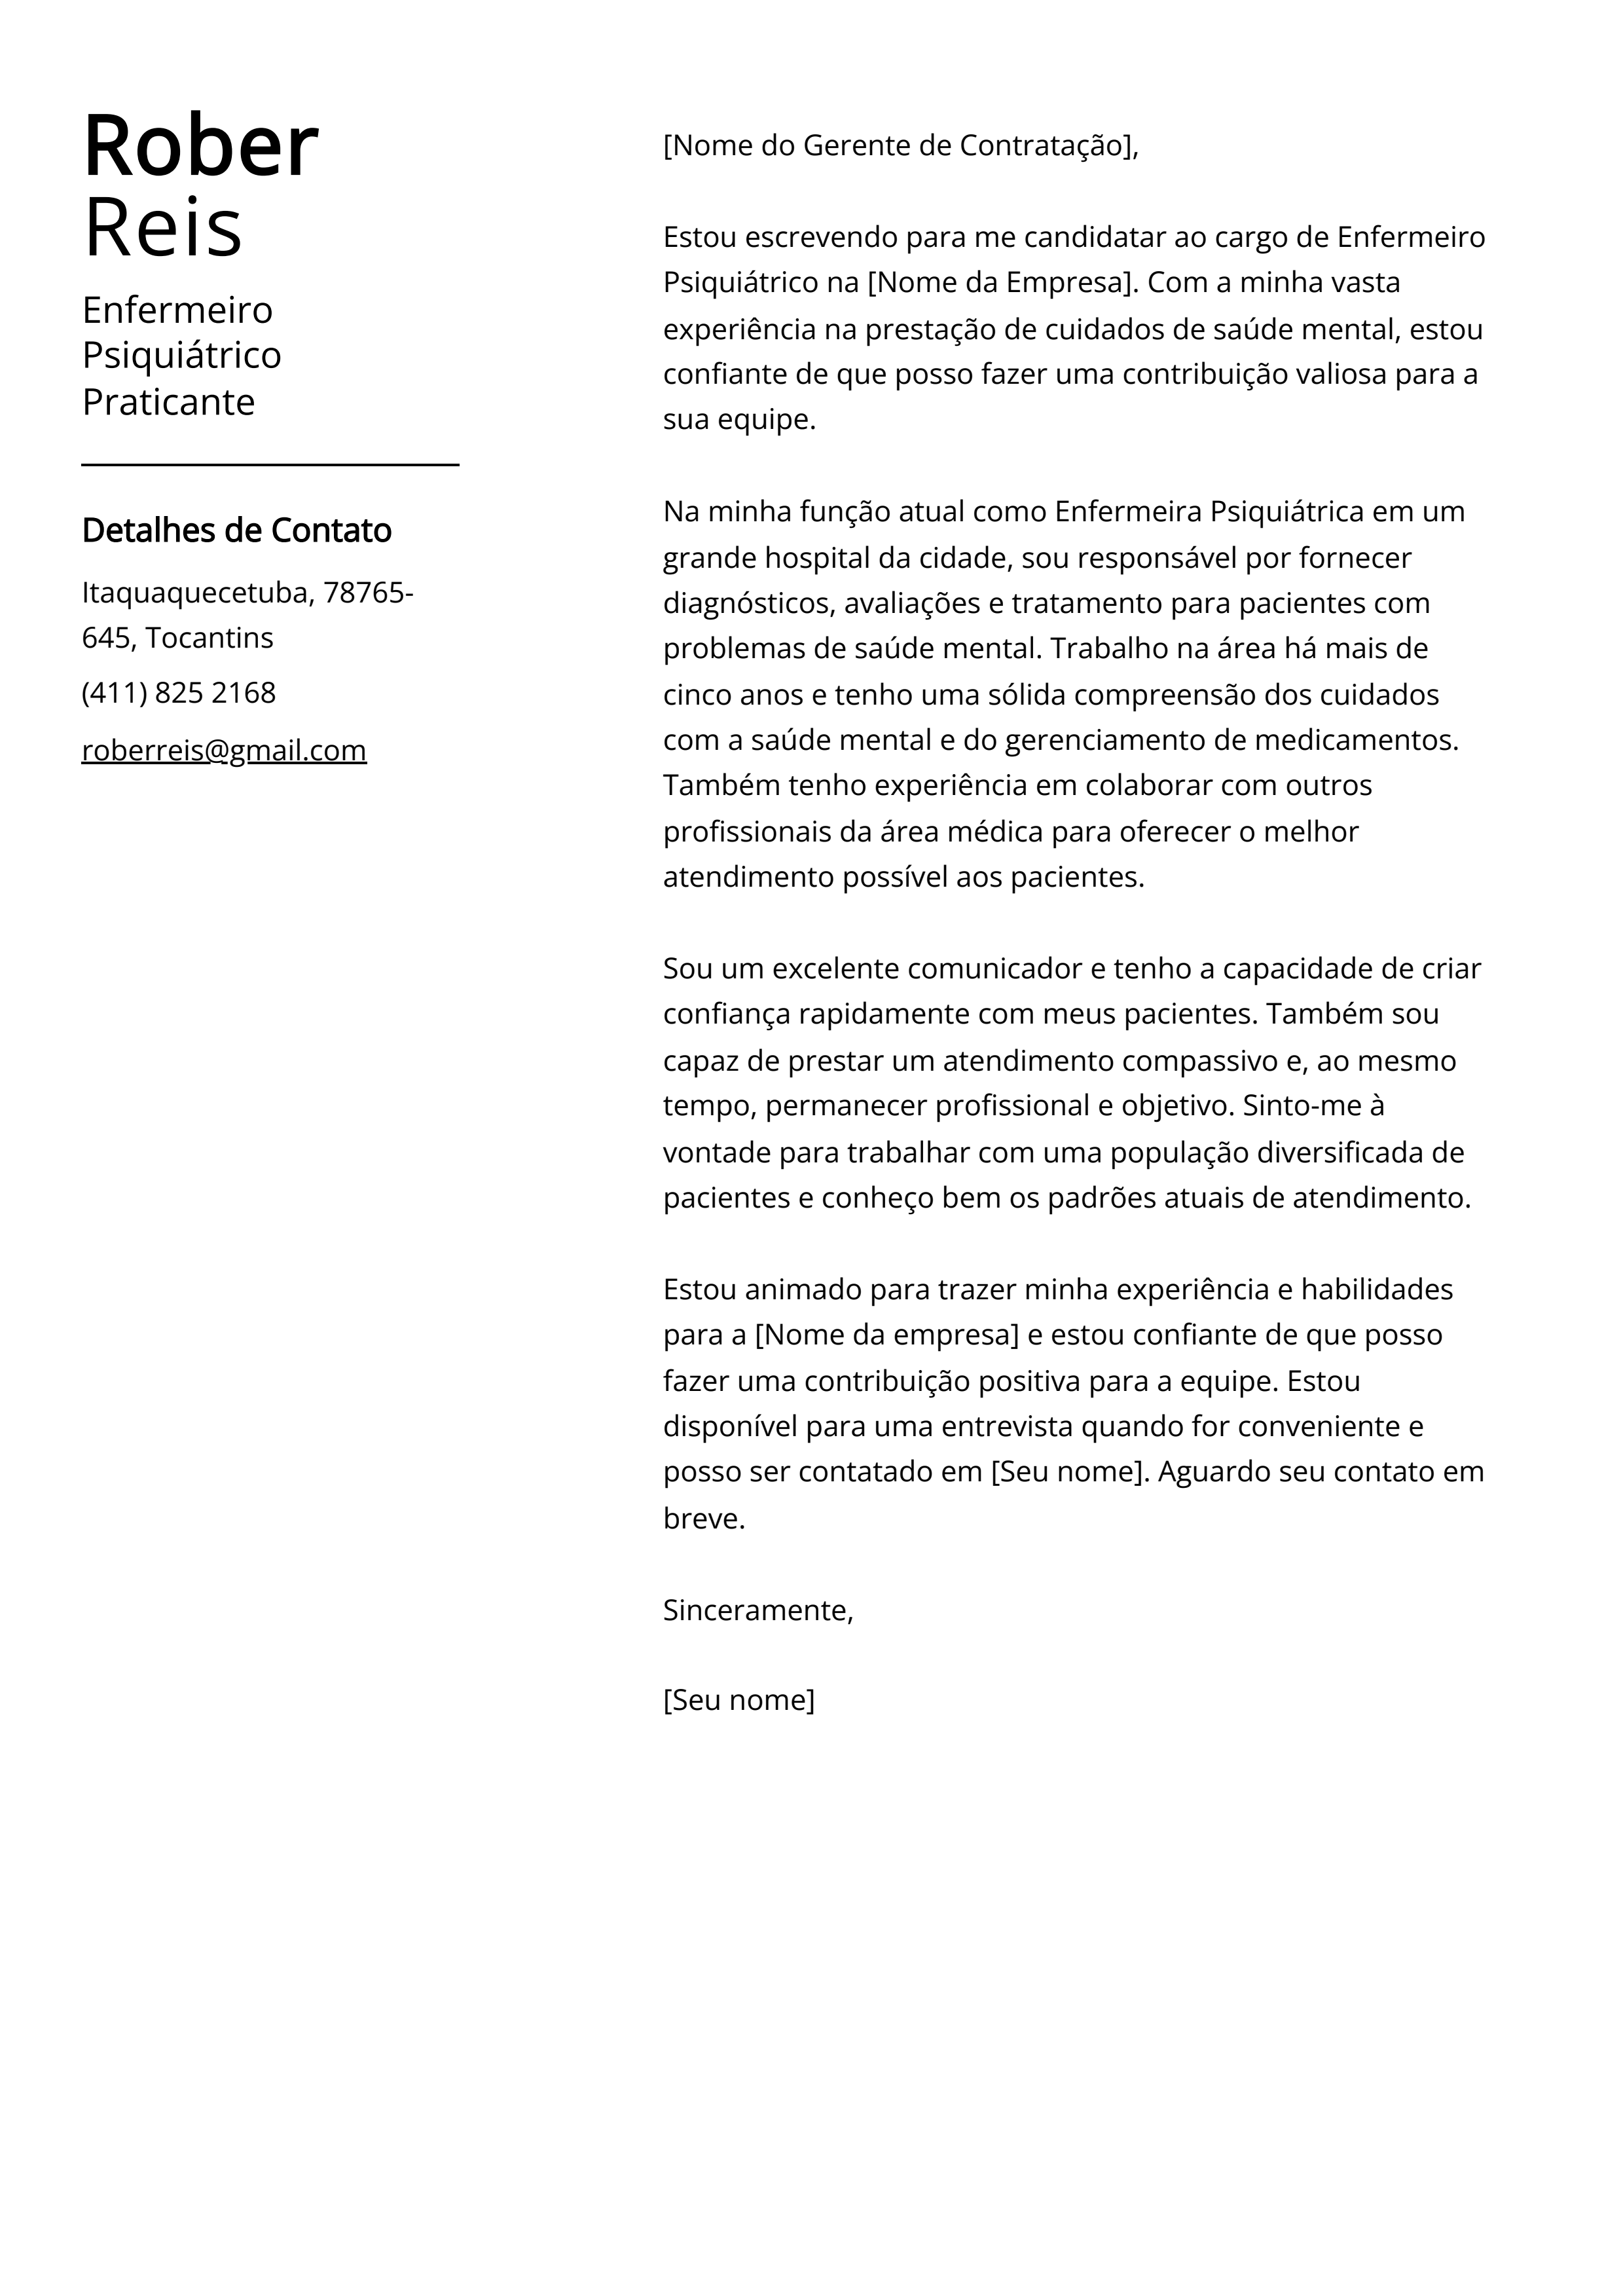 Exemplo de Carta de Apresentação do Enfermeiro Psiquiátrico Praticante